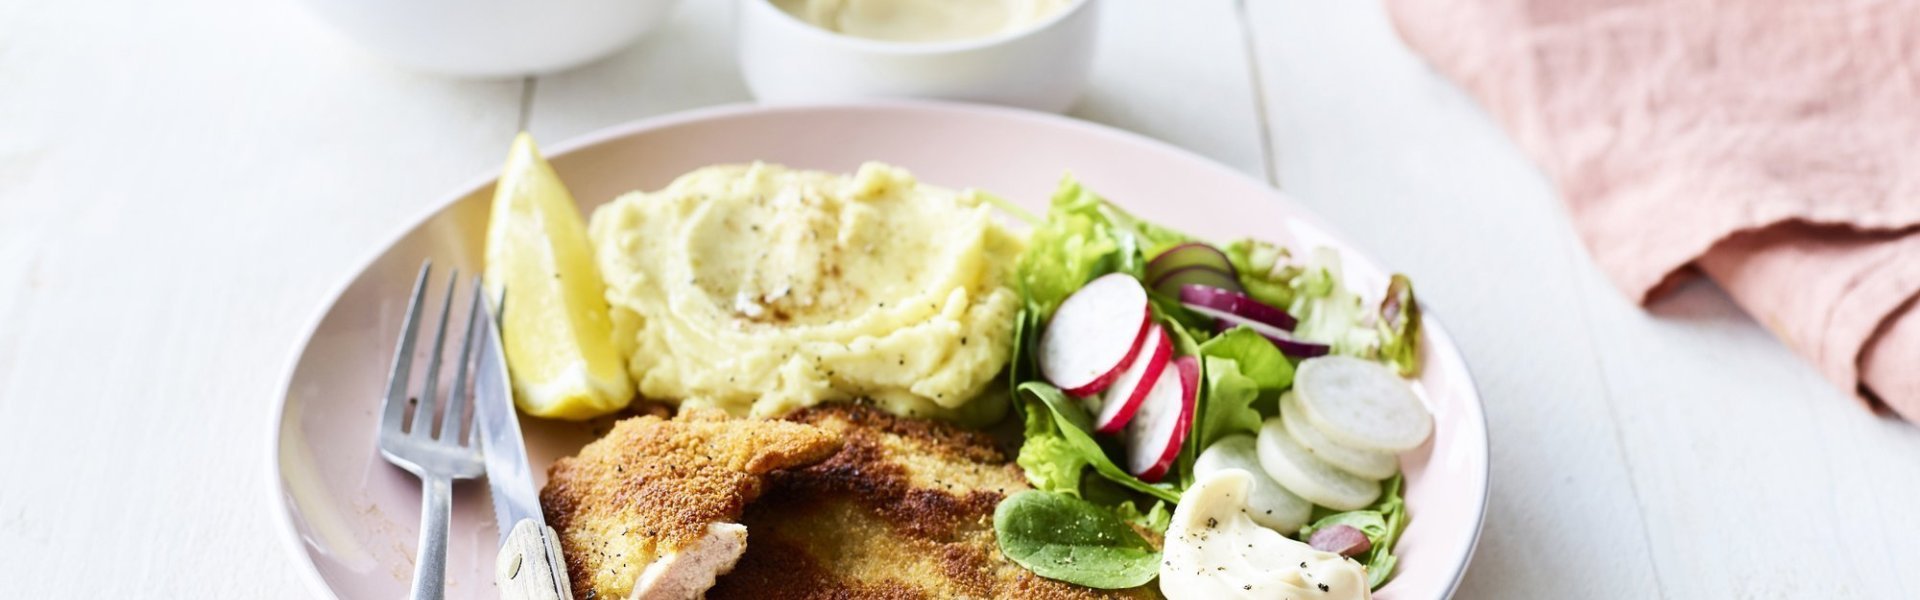 Een homemade shnitzel ligt op een pastelroze bord, samen met aardappelpuree, verse sla en zelfgemaakte mayonaise. Er is nog wat extra salade in een wit potje en mayonaise voor extra lekkers op te scheppen. 